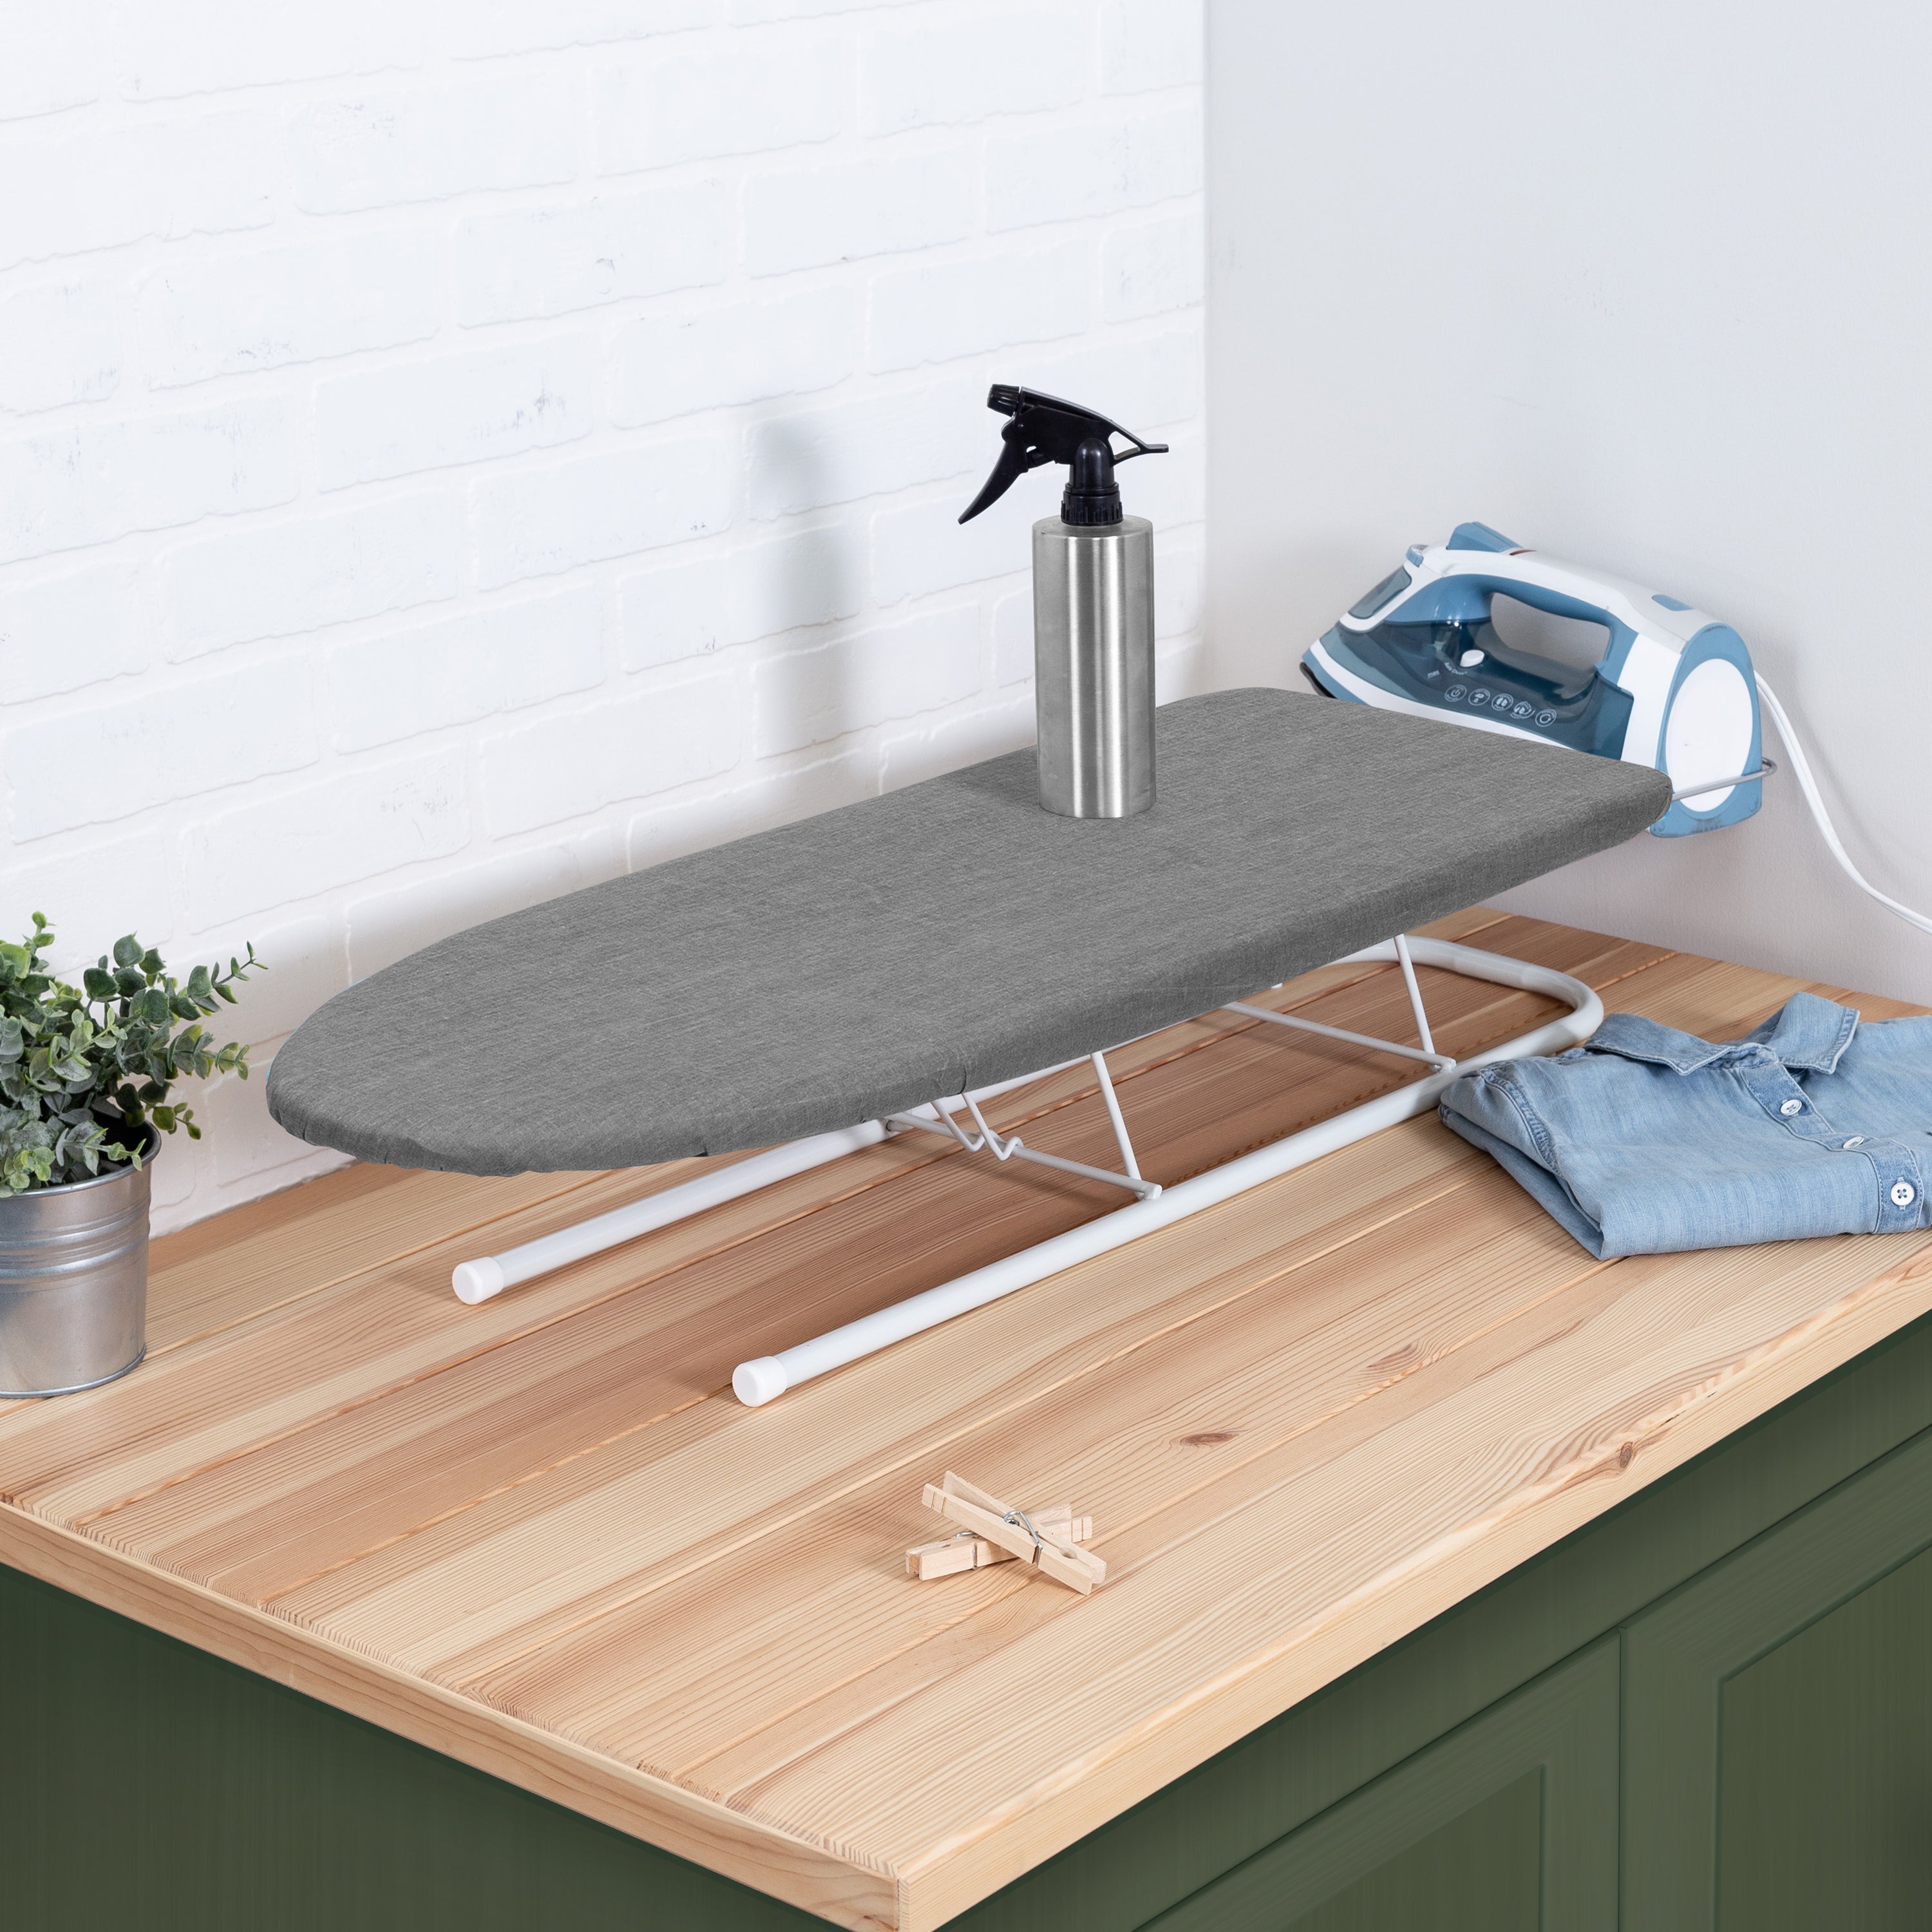  BKTD Small Ironing Board, Portable Tabletop Mini